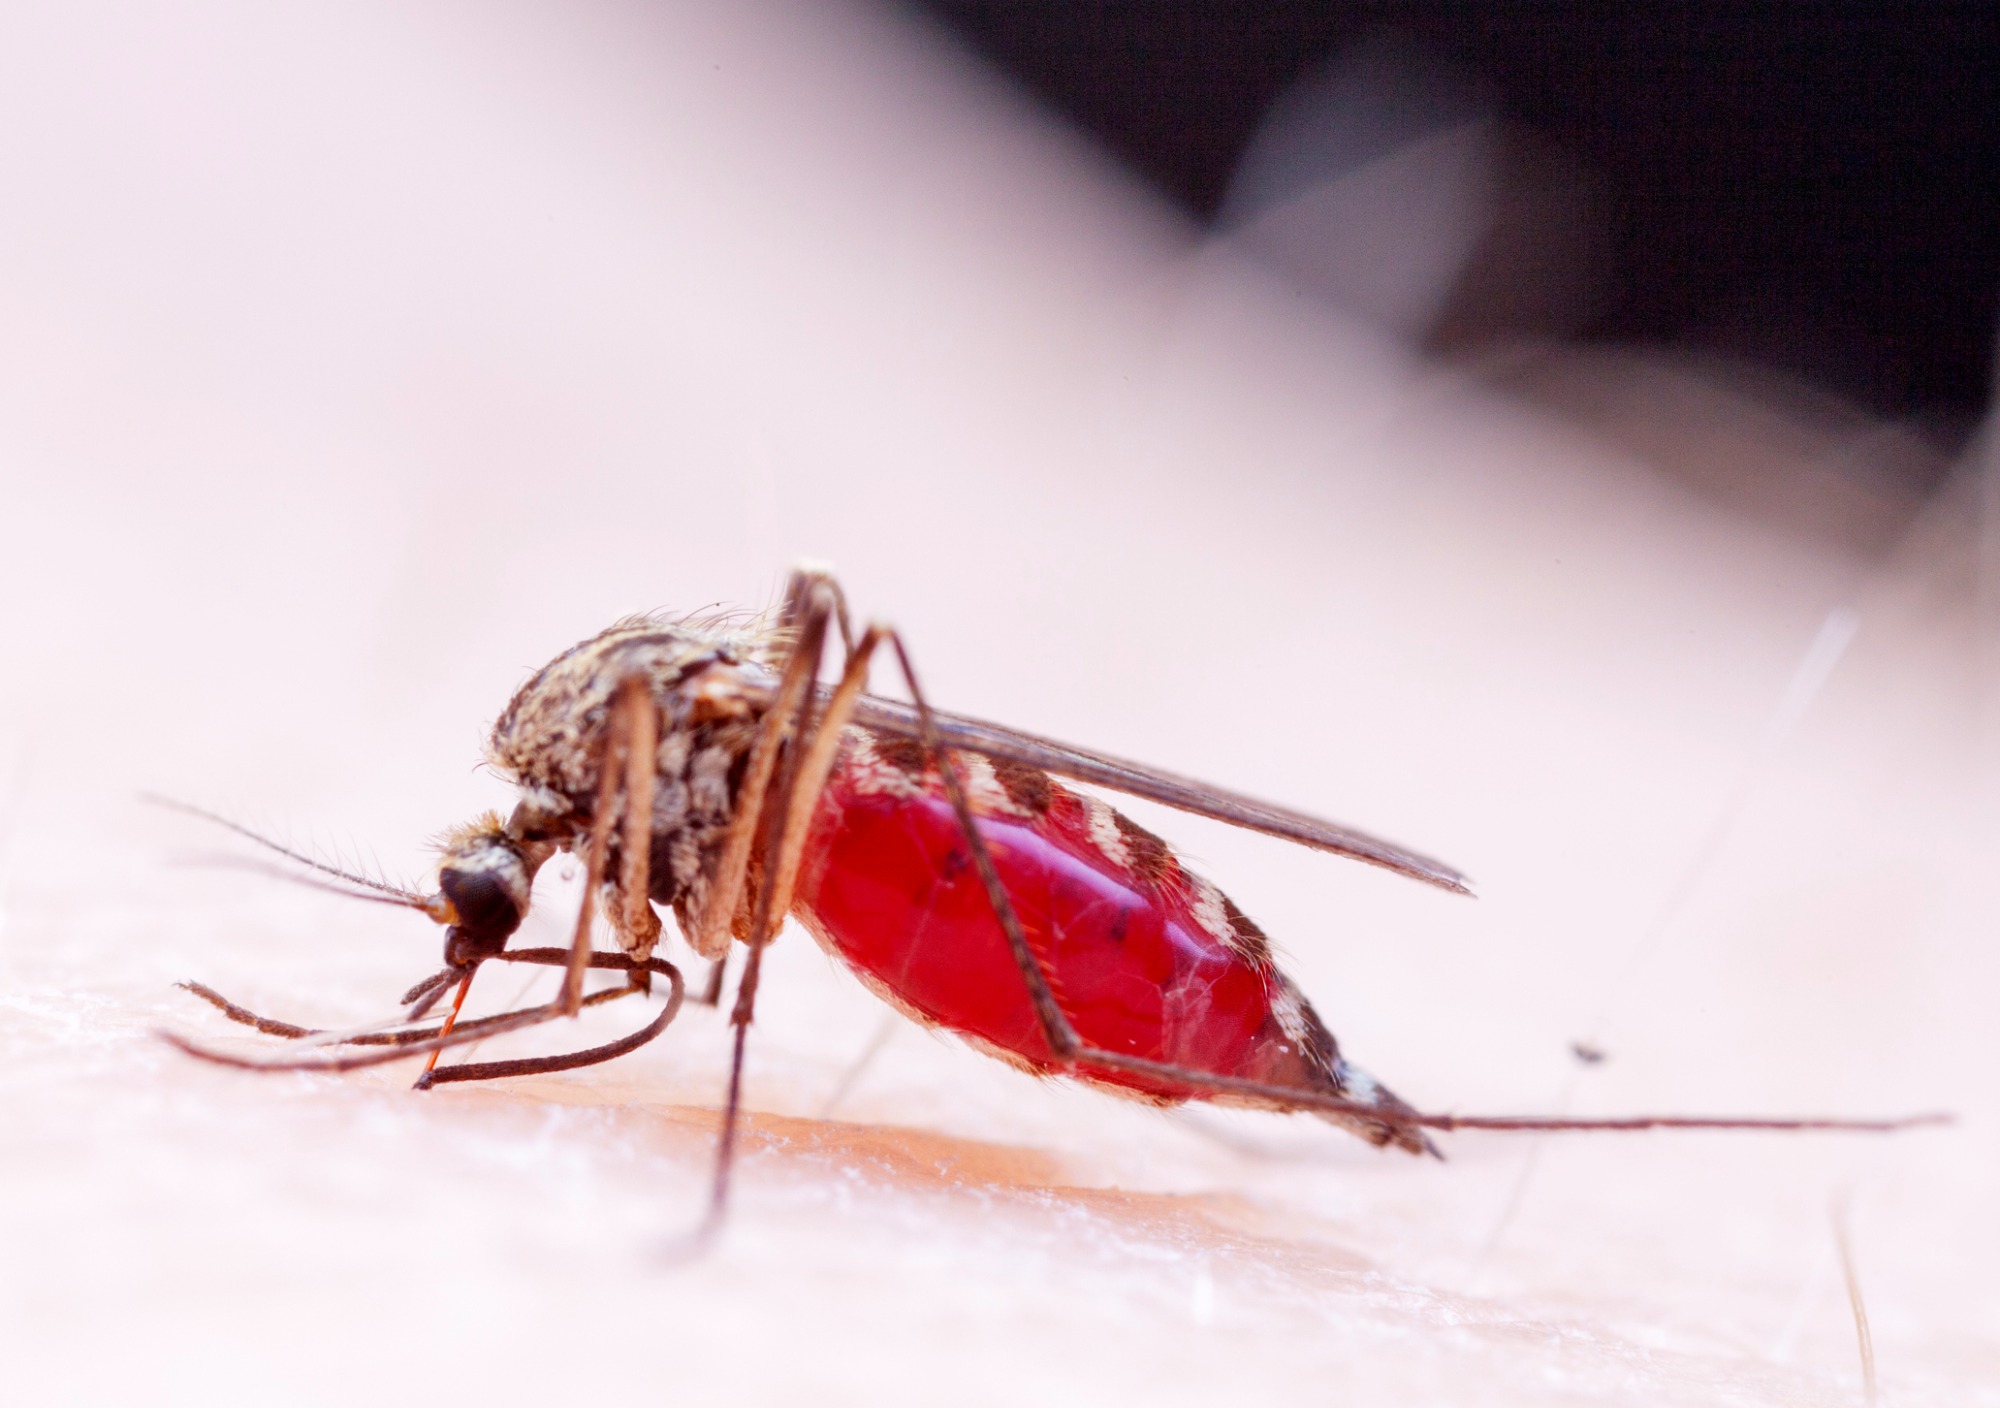 Любимая группа крови комаров